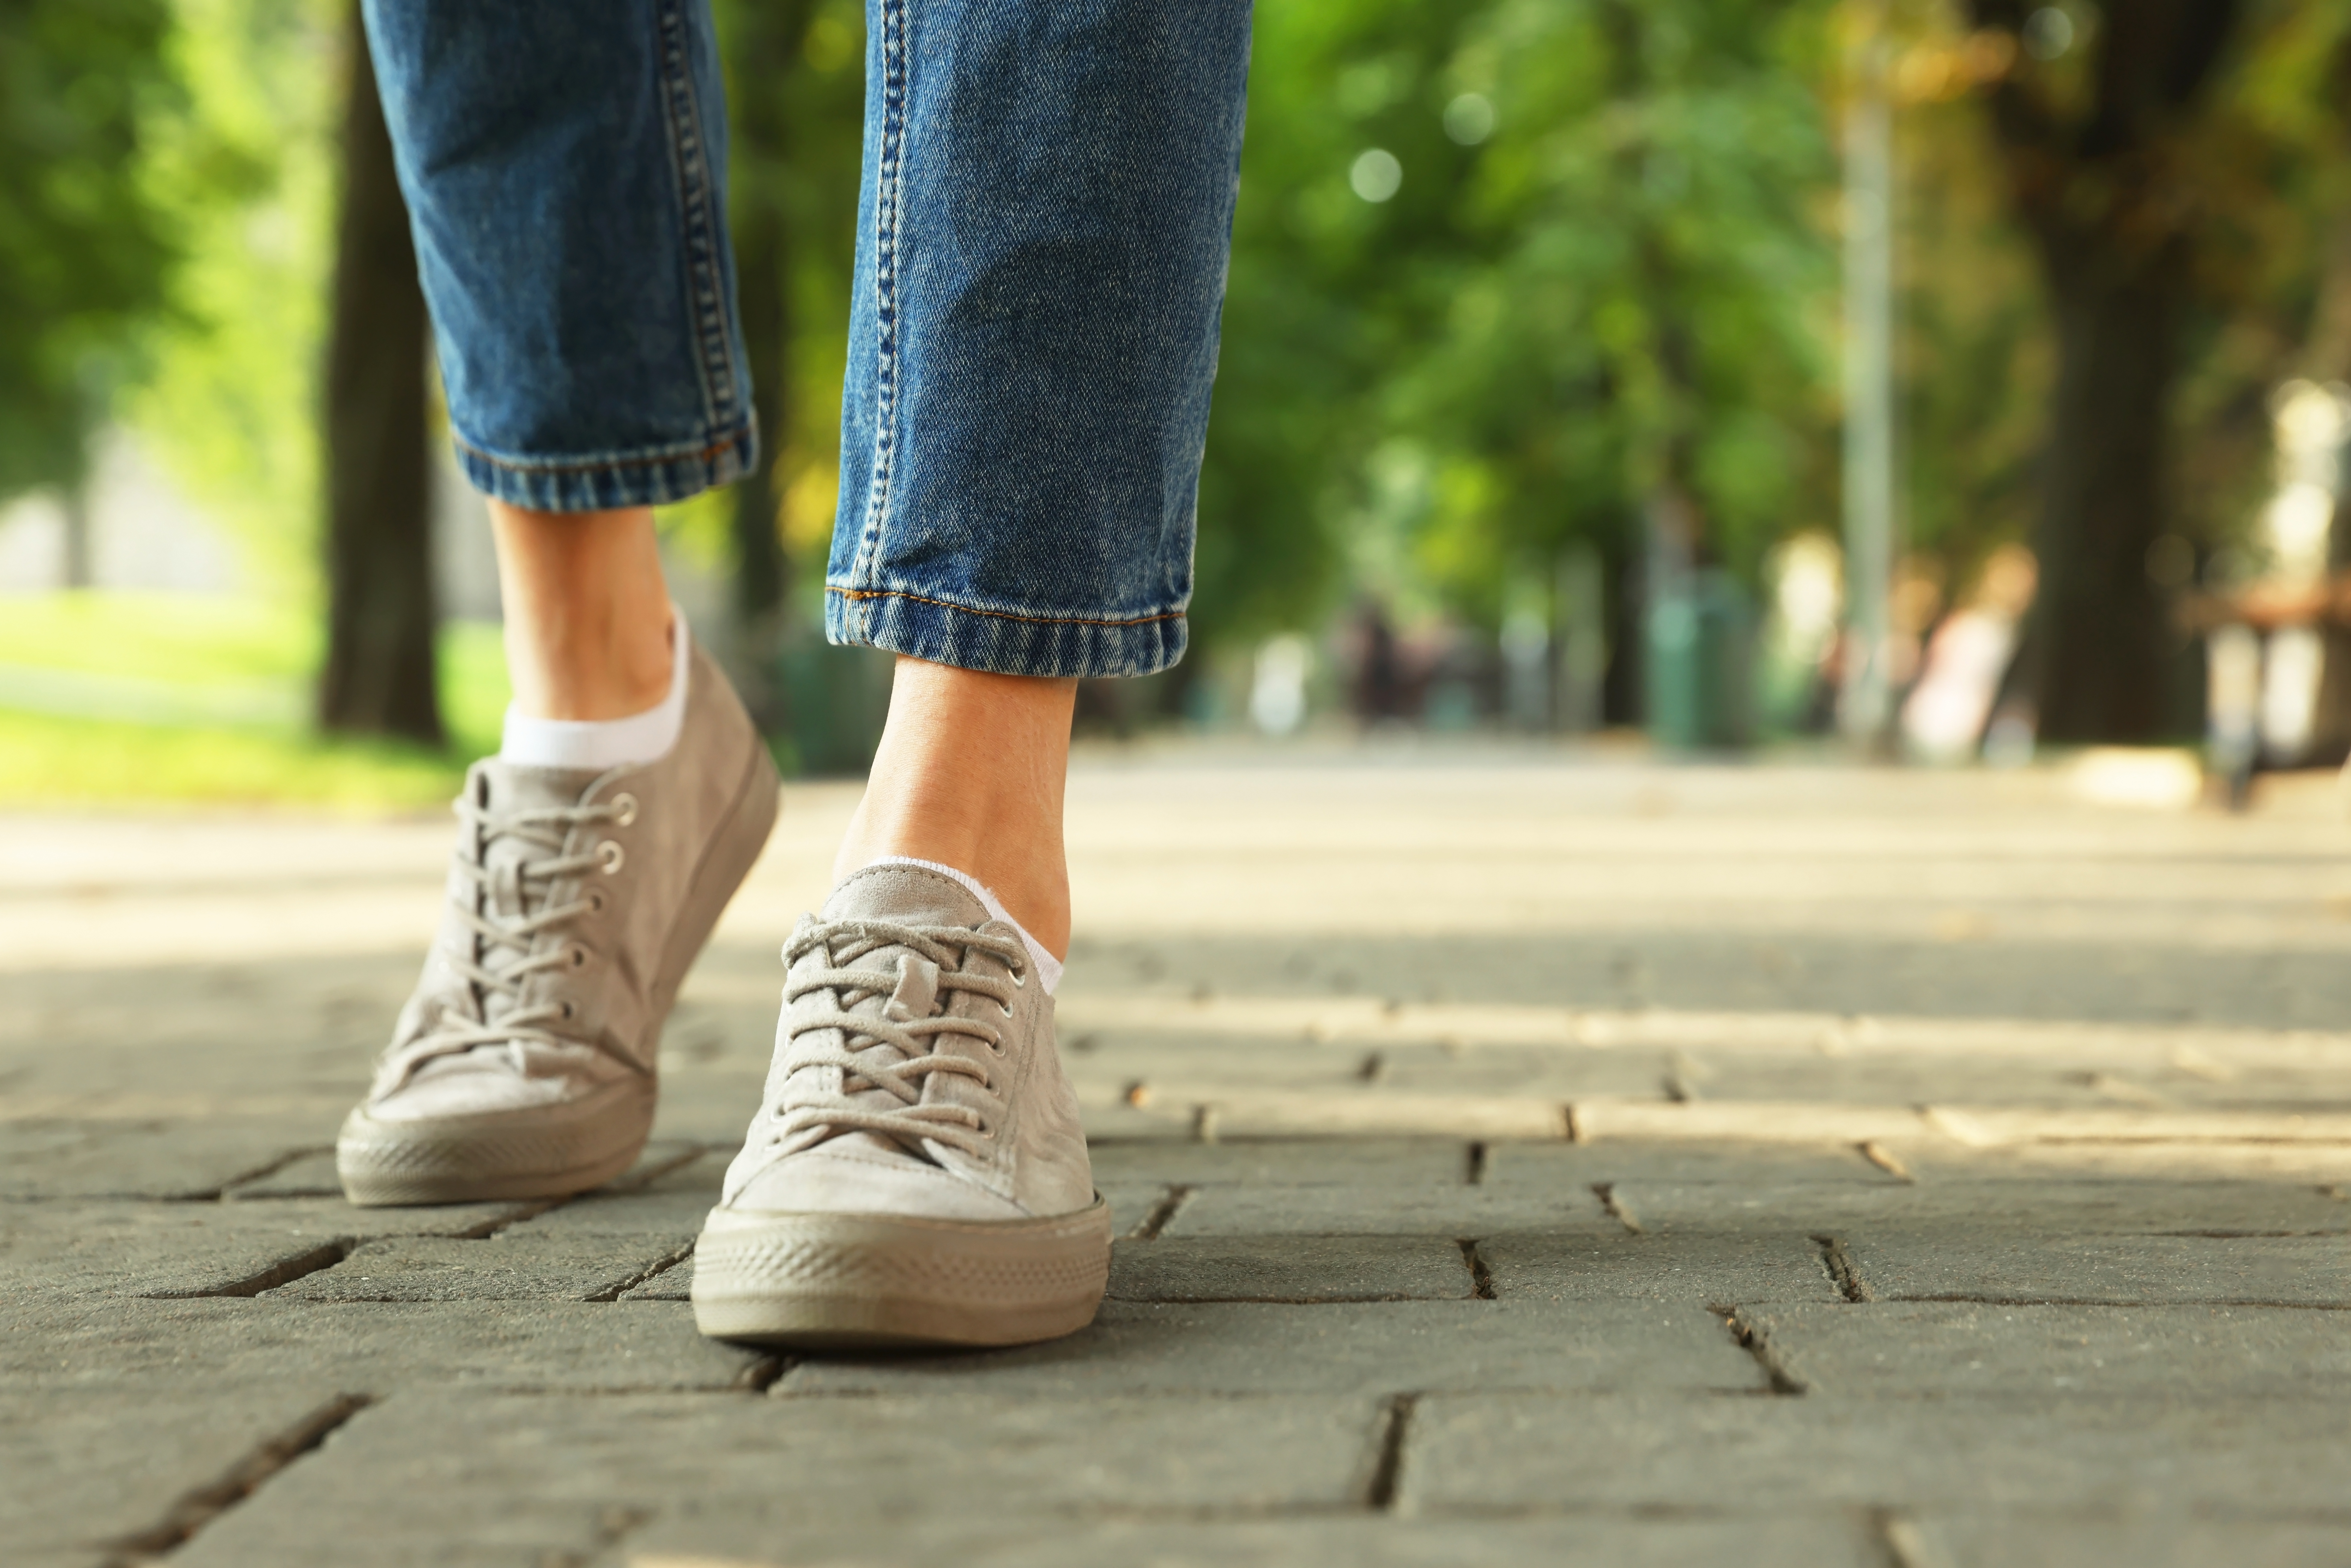 Woman in sneakers walking on city street. | Source: Shutterstock